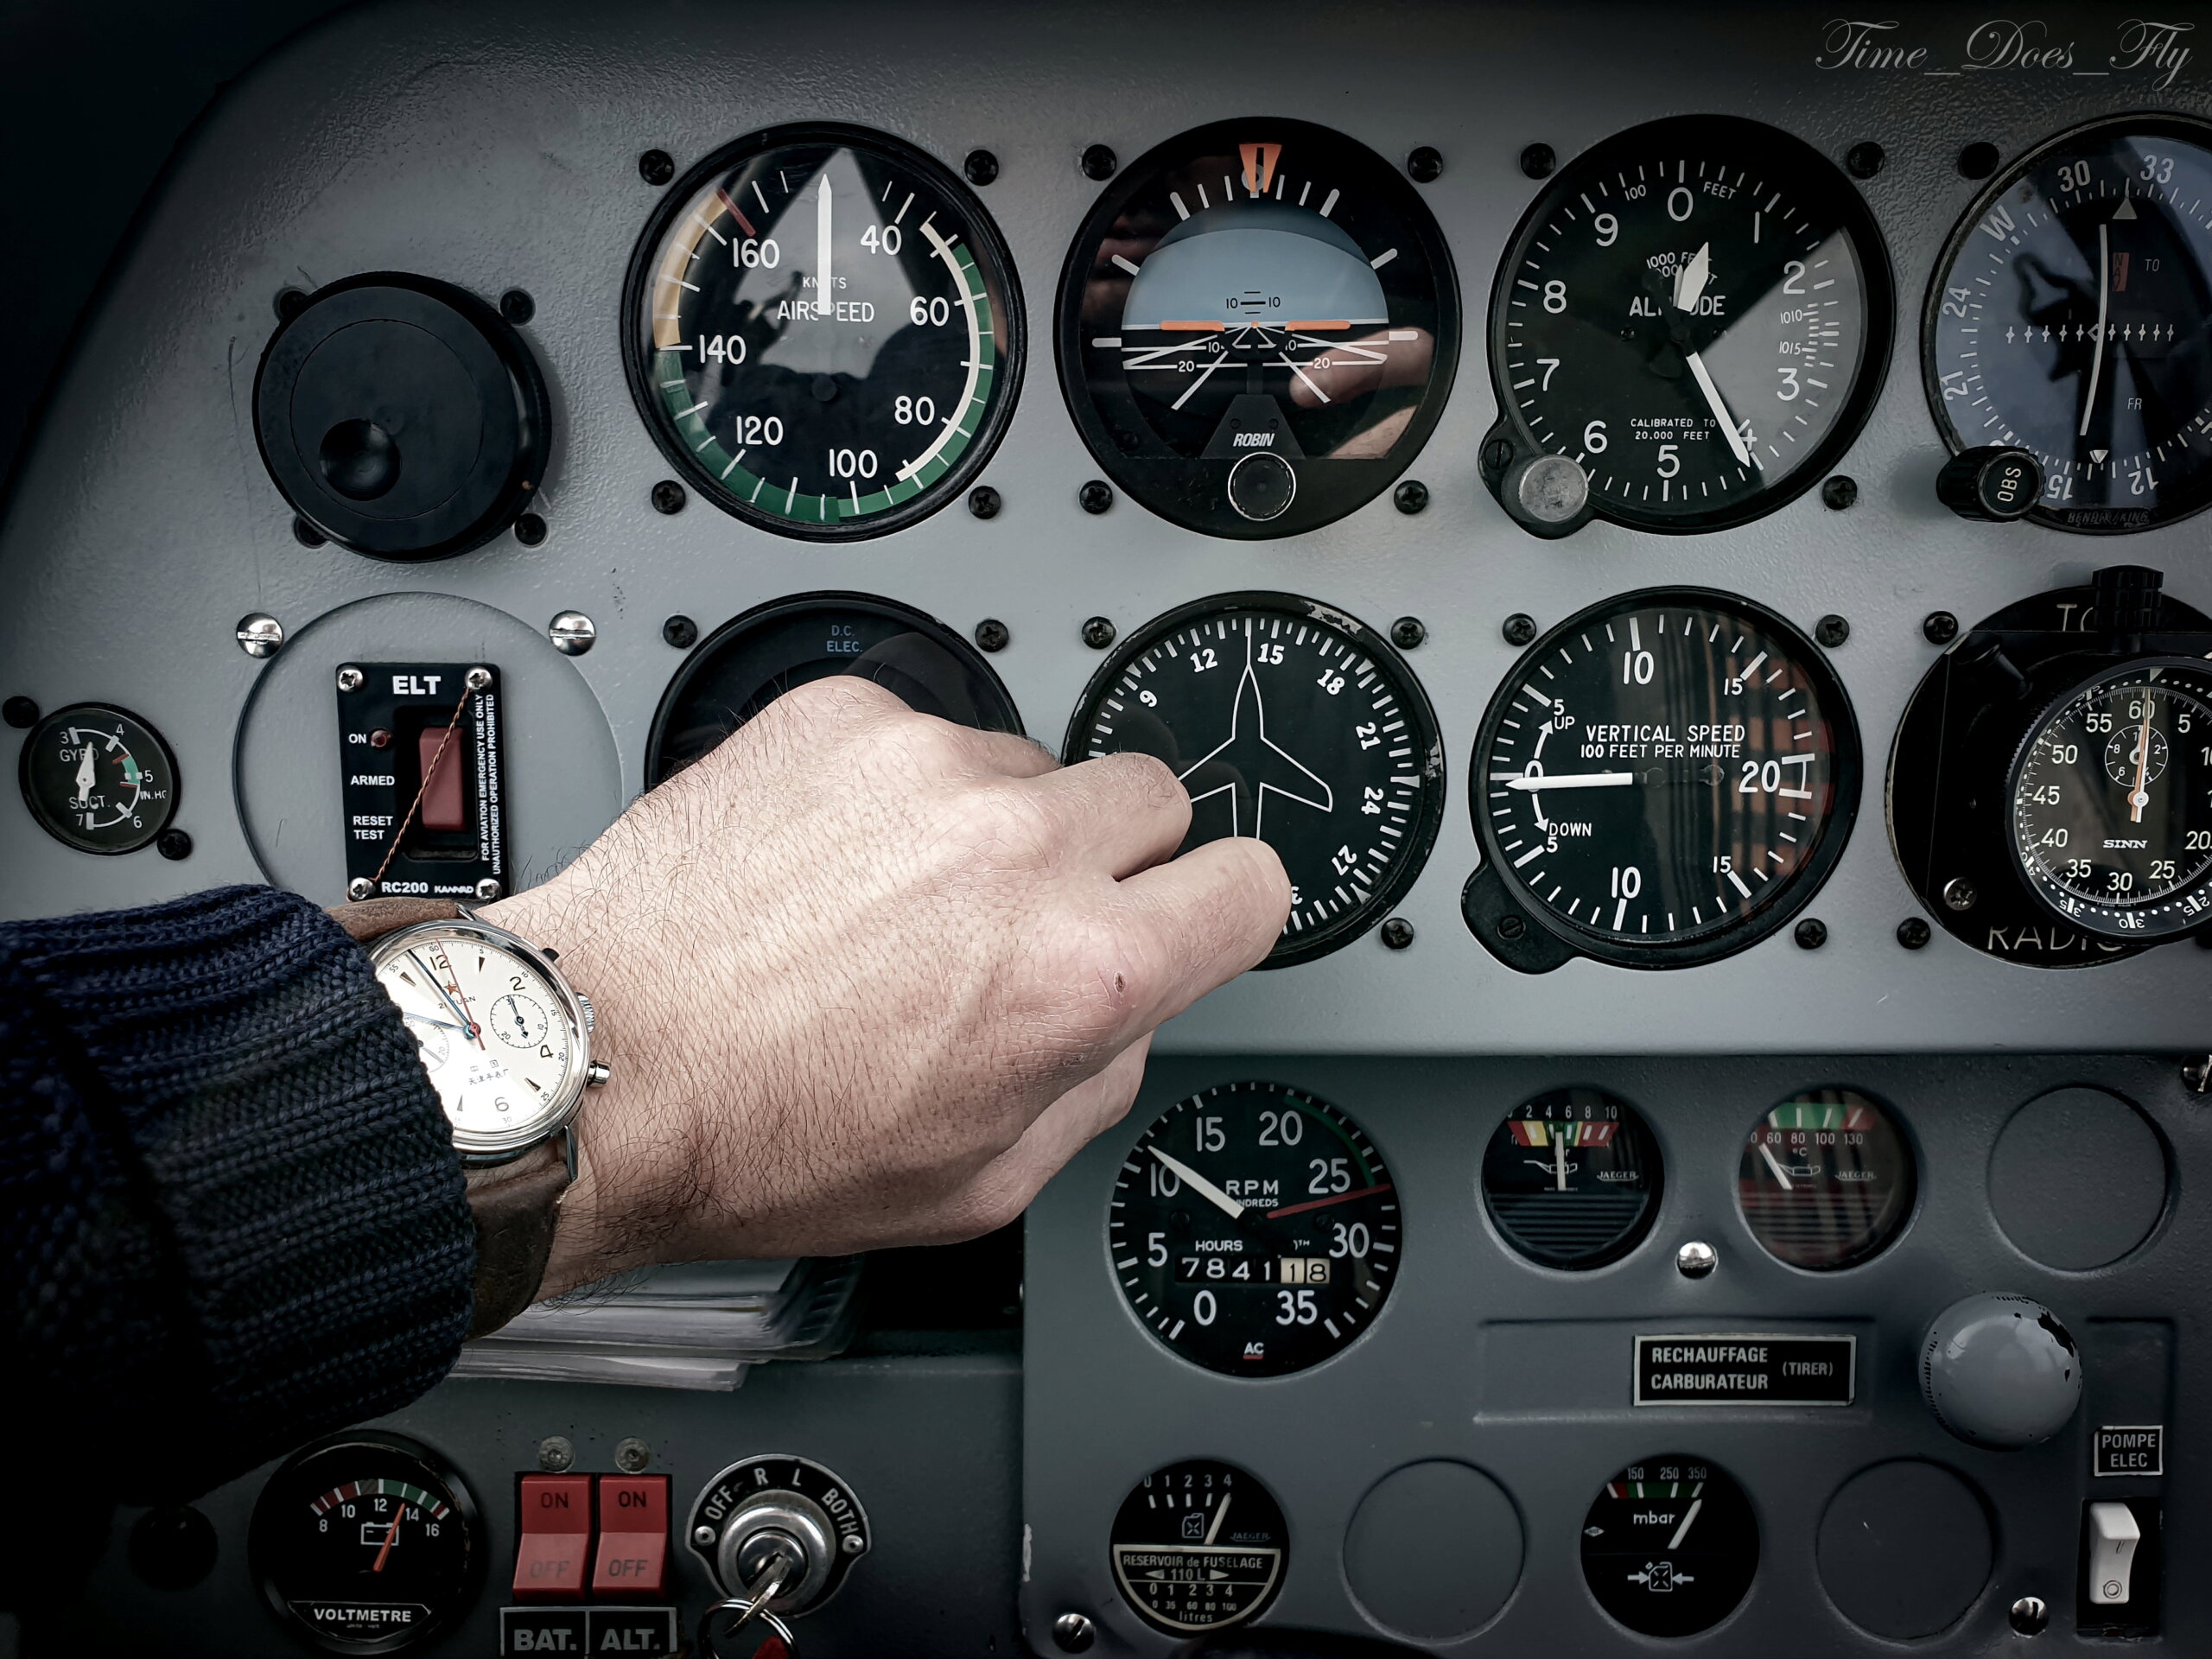 flieger - Feu de vos montres d'aviateur, ou inspirées du monde aéronautique - Page 10 20210443